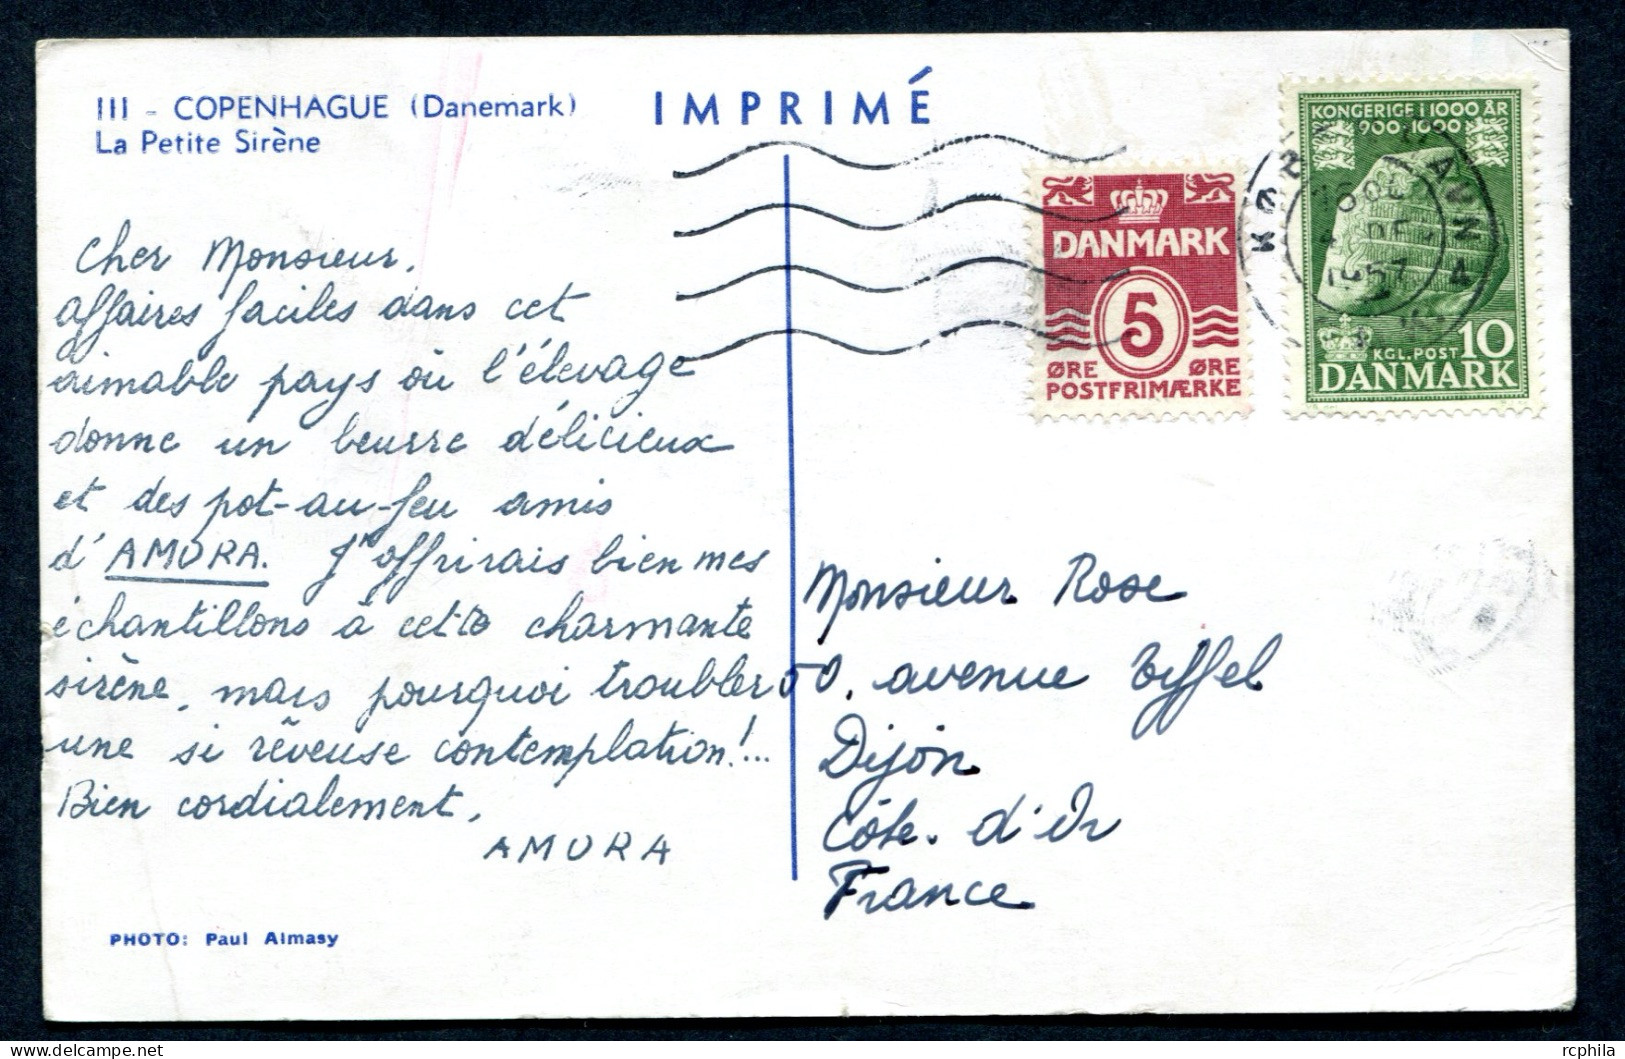 RC 27343 DANEMARK 1957 CROISIERE AMORA CARTE PUBLICITAIRE POUR DIJON COTE D'OR FRANCE - Covers & Documents